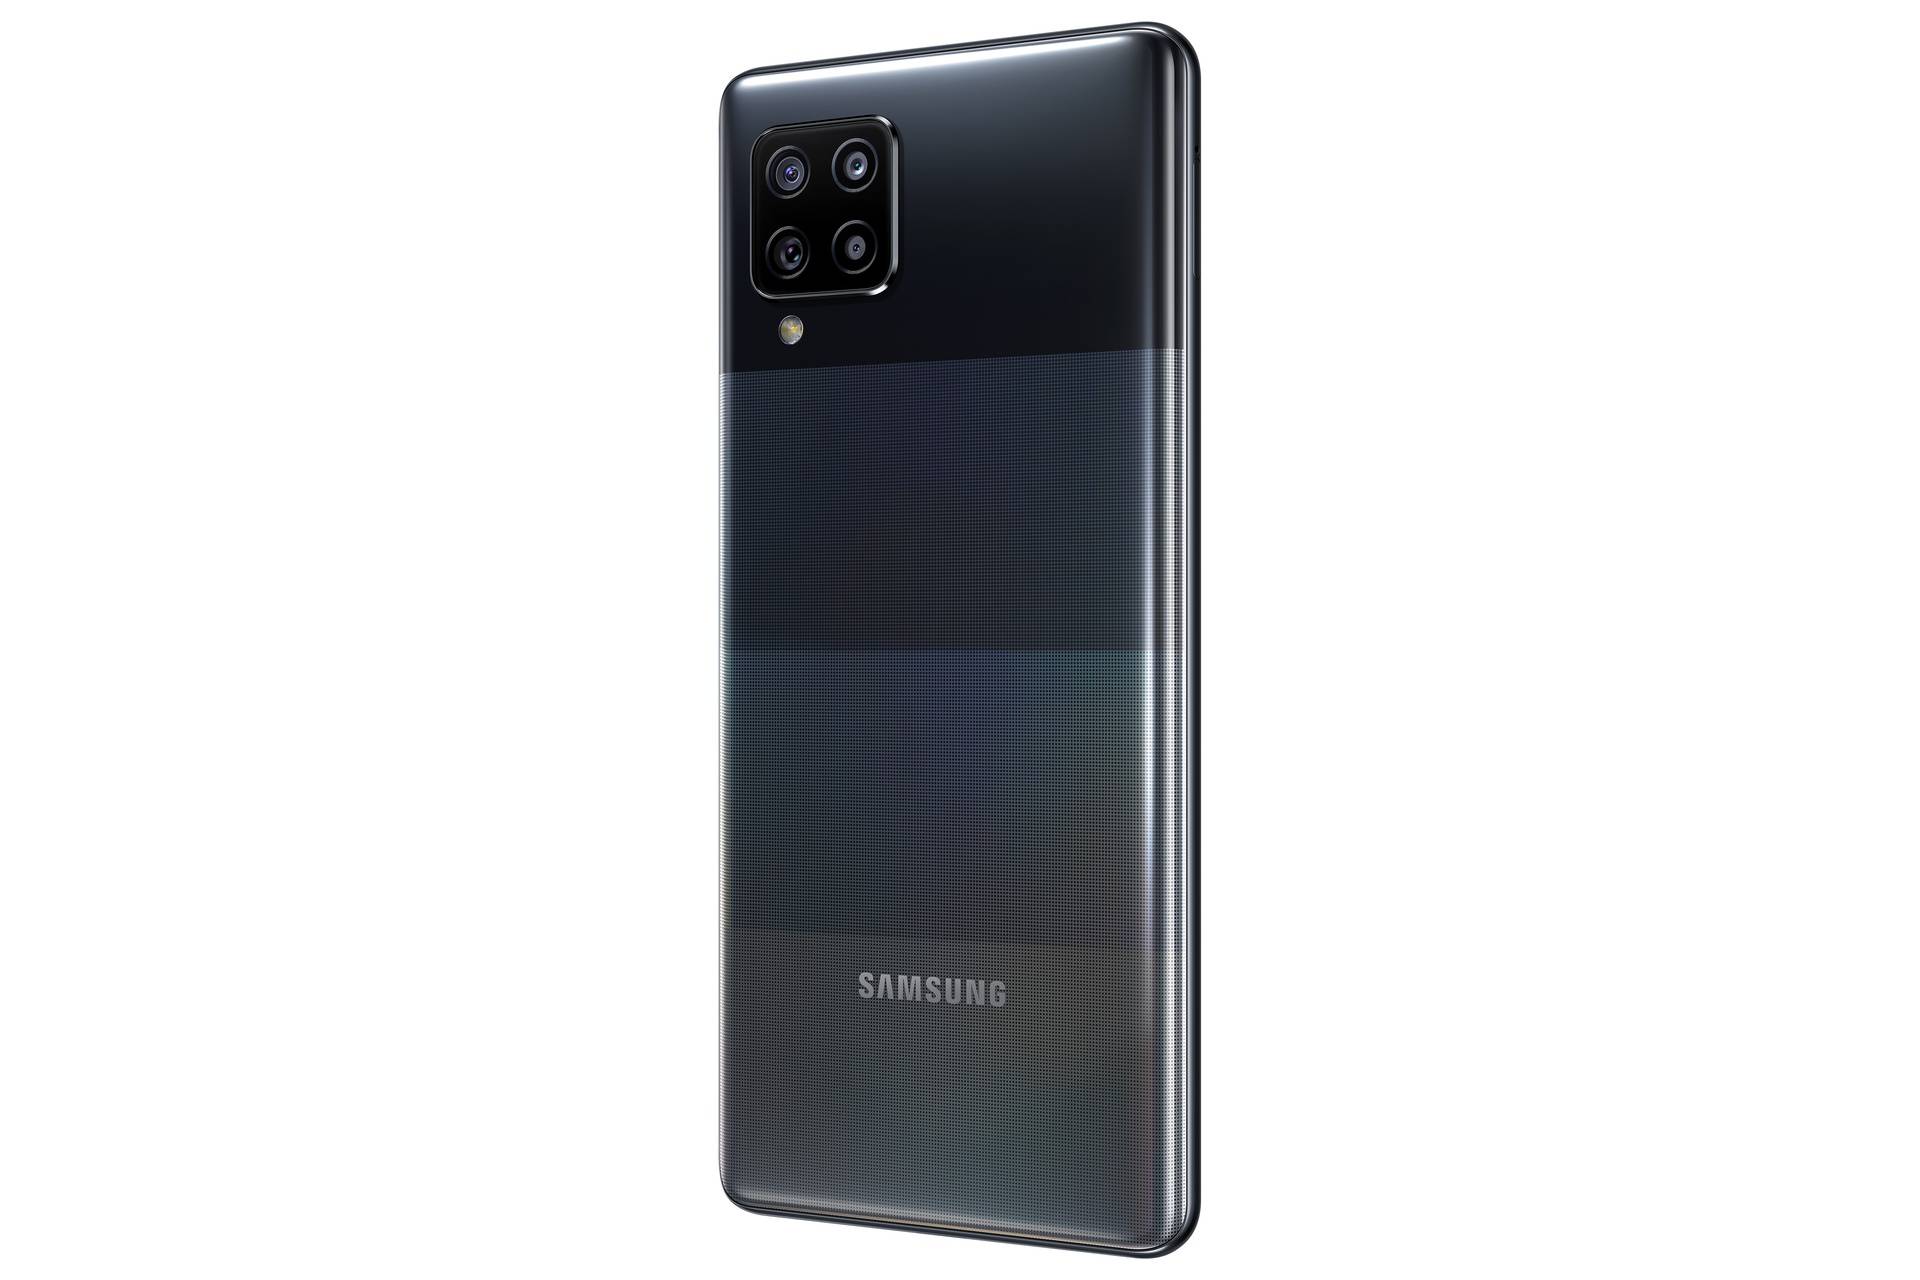 Samsung uz jeftini 5G telefon najavio i fitness narukvicu kojoj će baterija trajati do dva tjedna